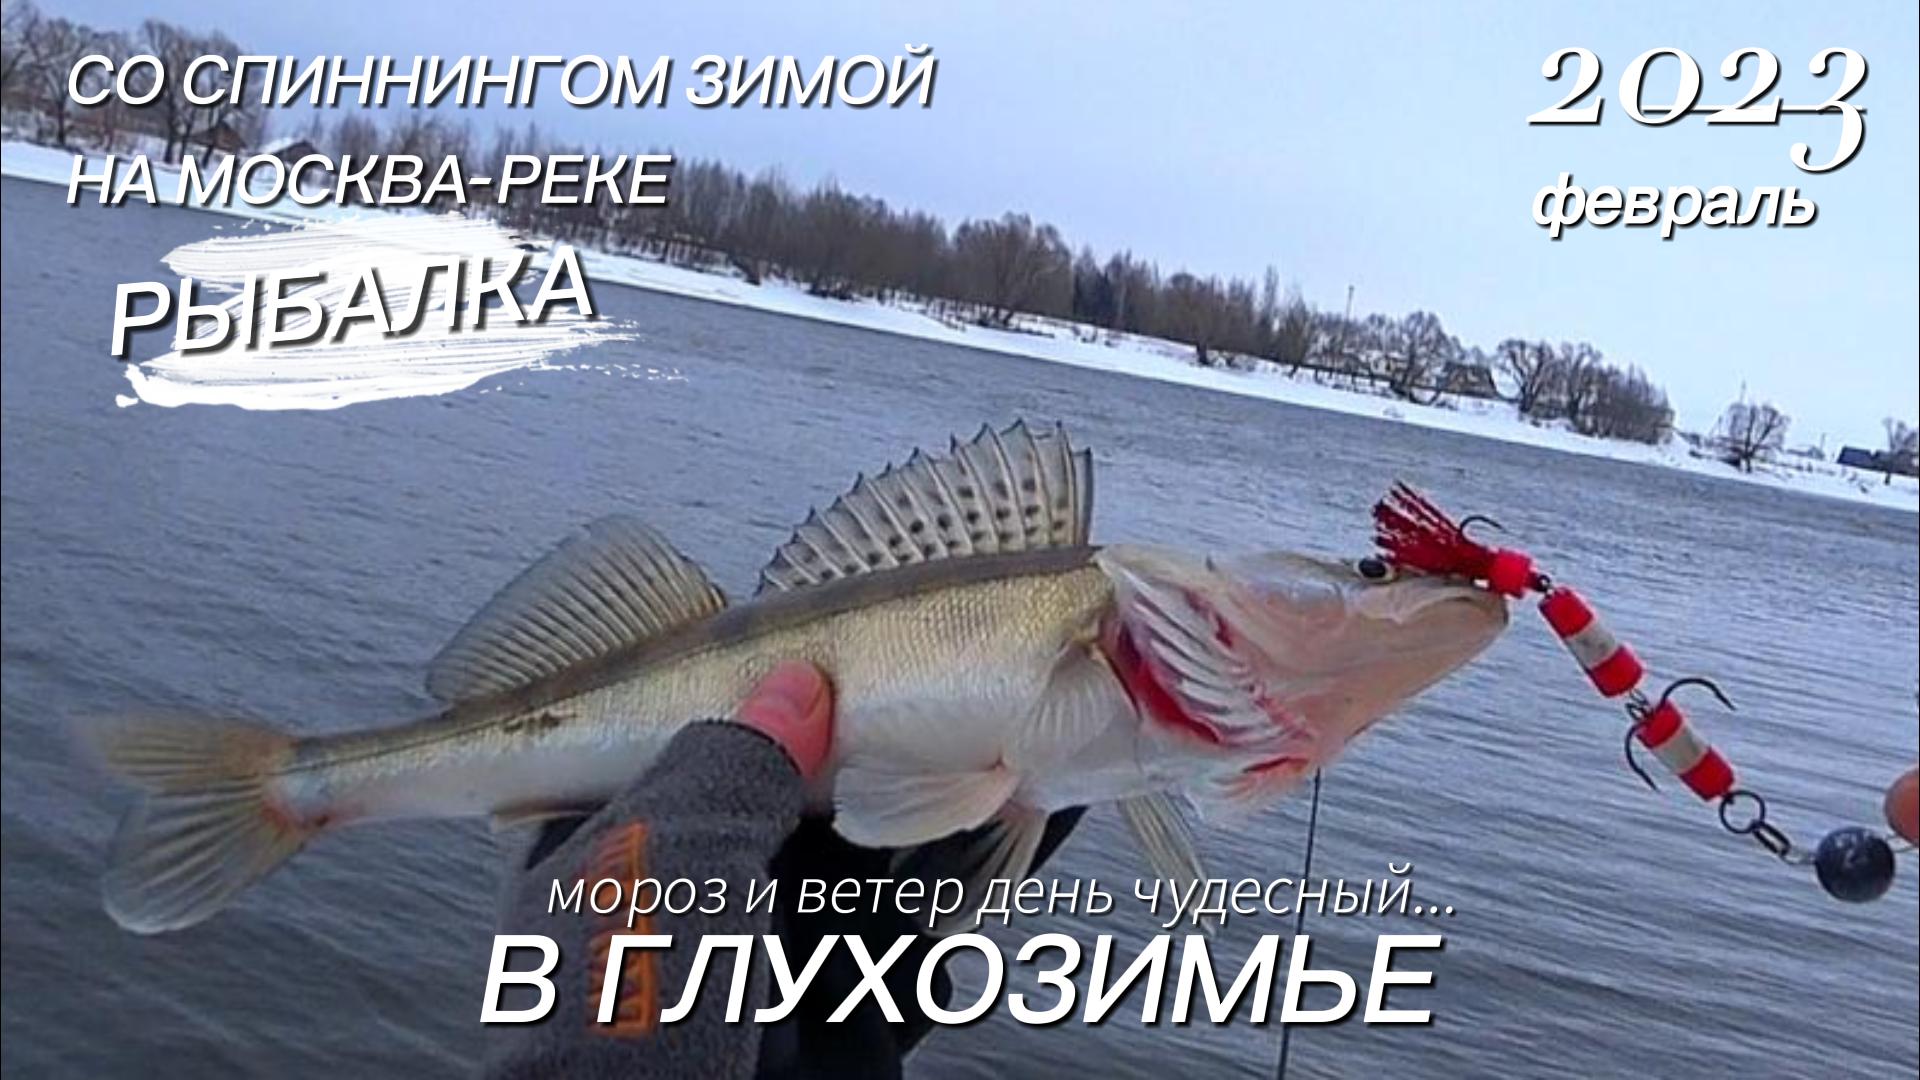 Рыбалка в феврале 2023 на Москва реке. Мороз и ветер, день чудесный...